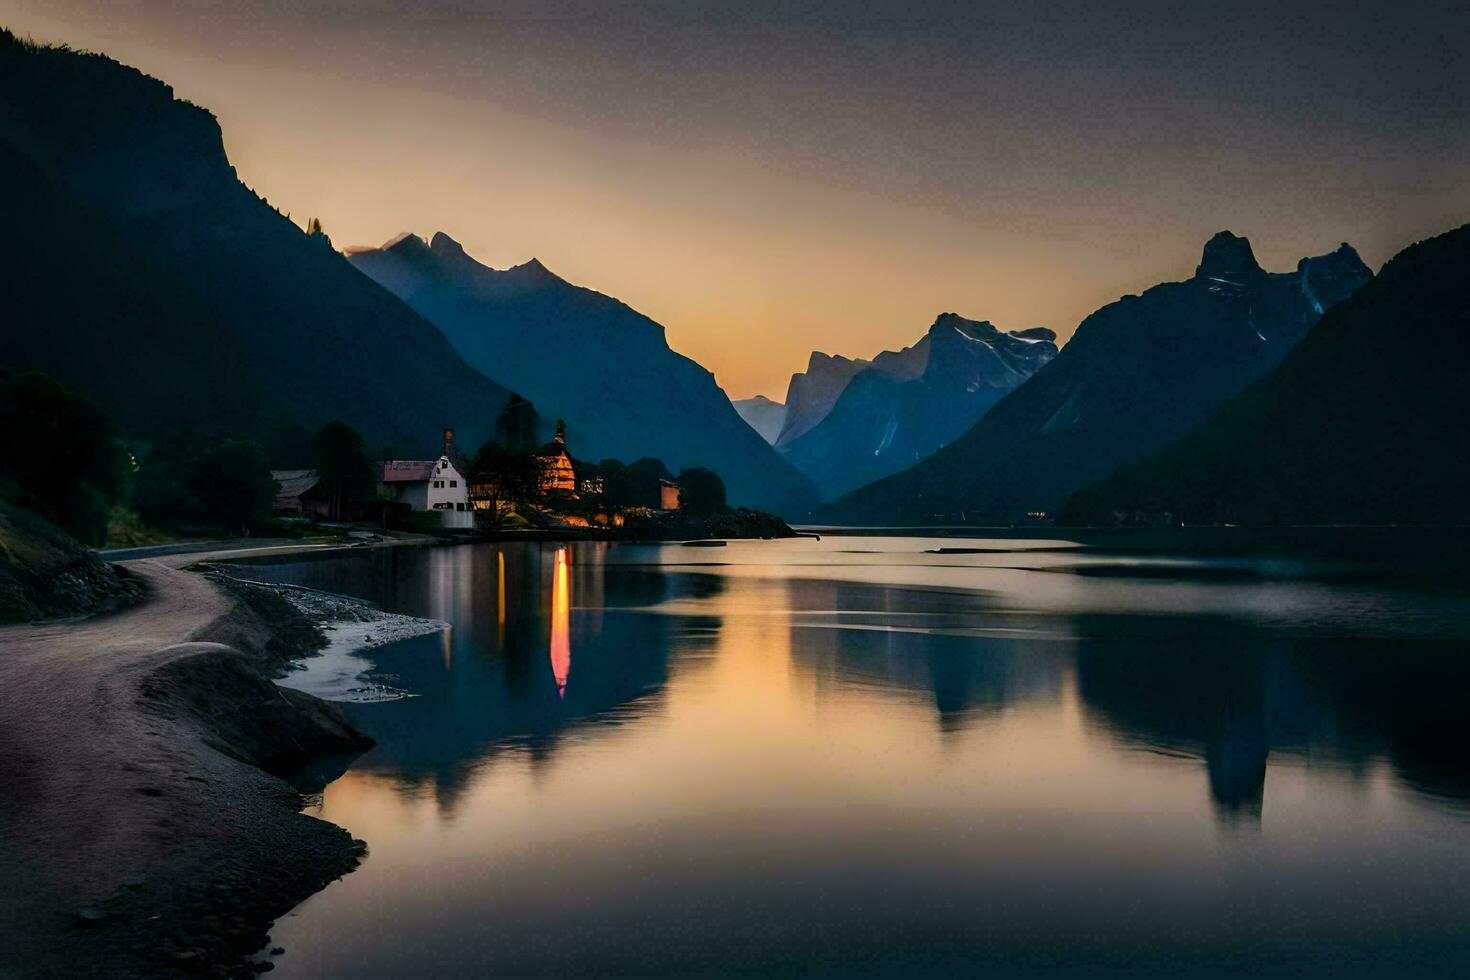 uma lago e montanhas às pôr do sol. gerado por IA foto